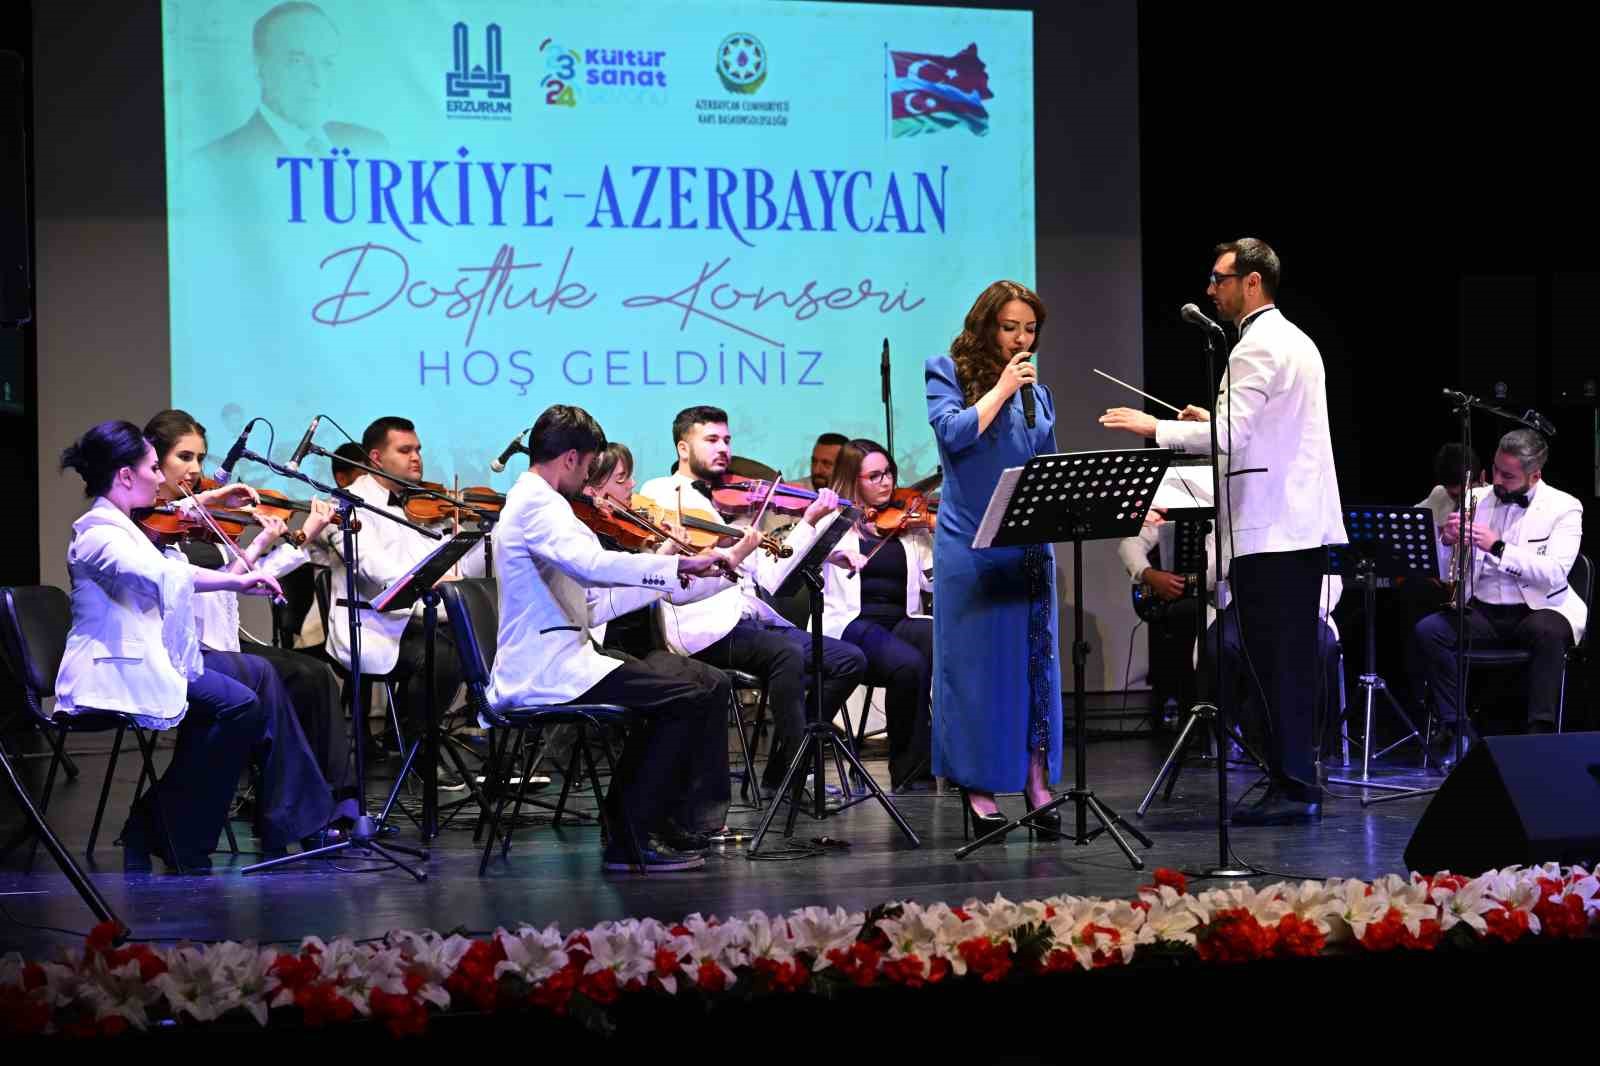 Türkiye-Azerbaycan Erzurum’da tek yürek oldu
